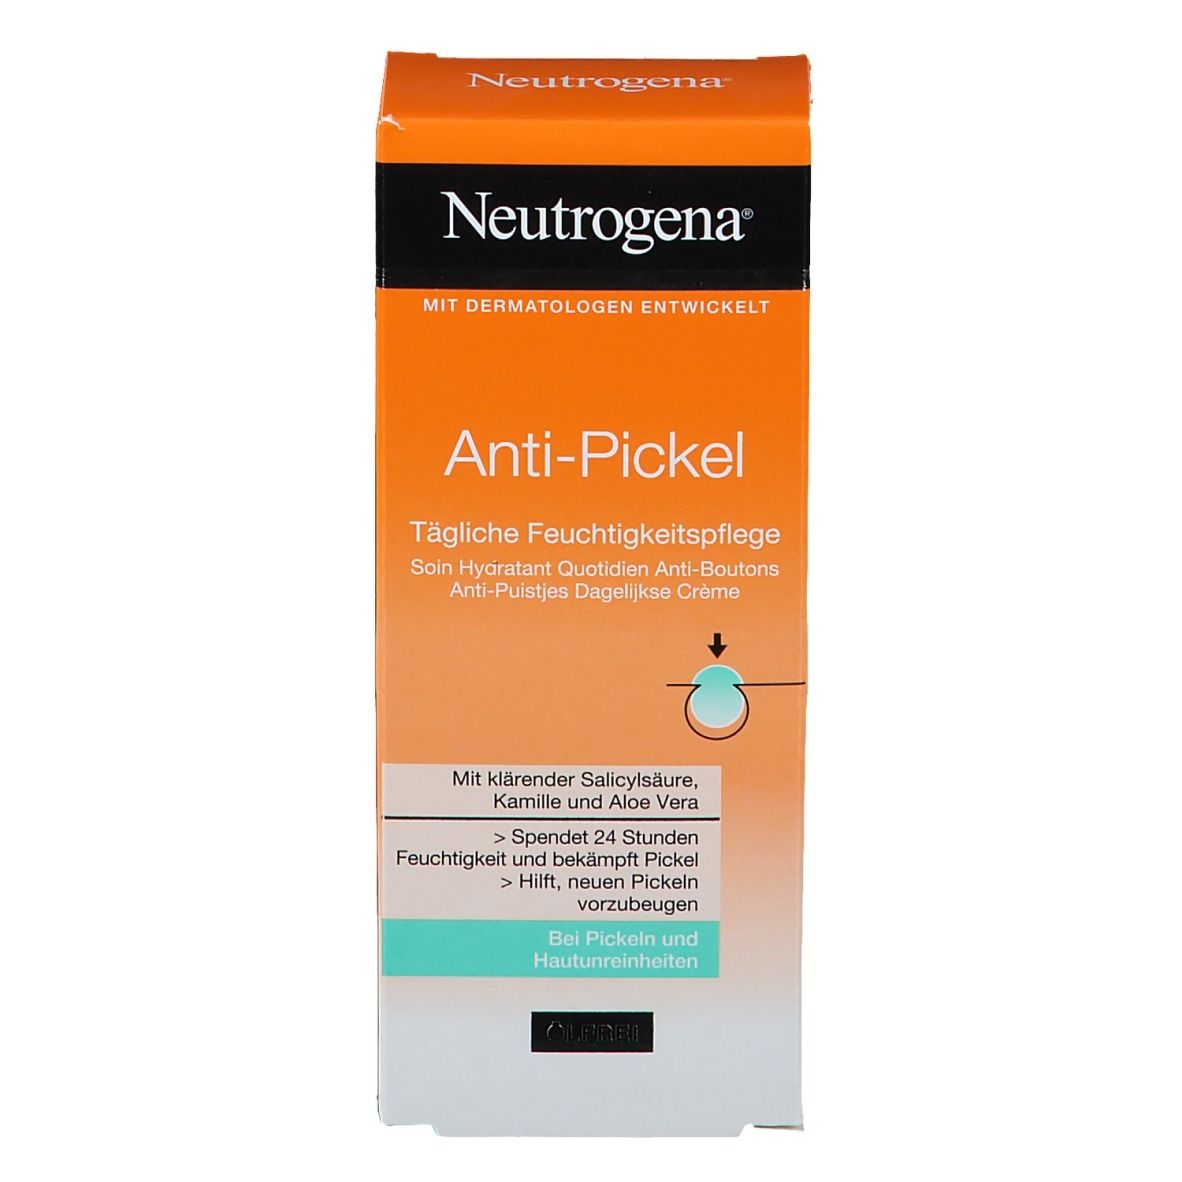 Neutrogena® Anti-Pickel Tägliche Feuchtigkeitspflege